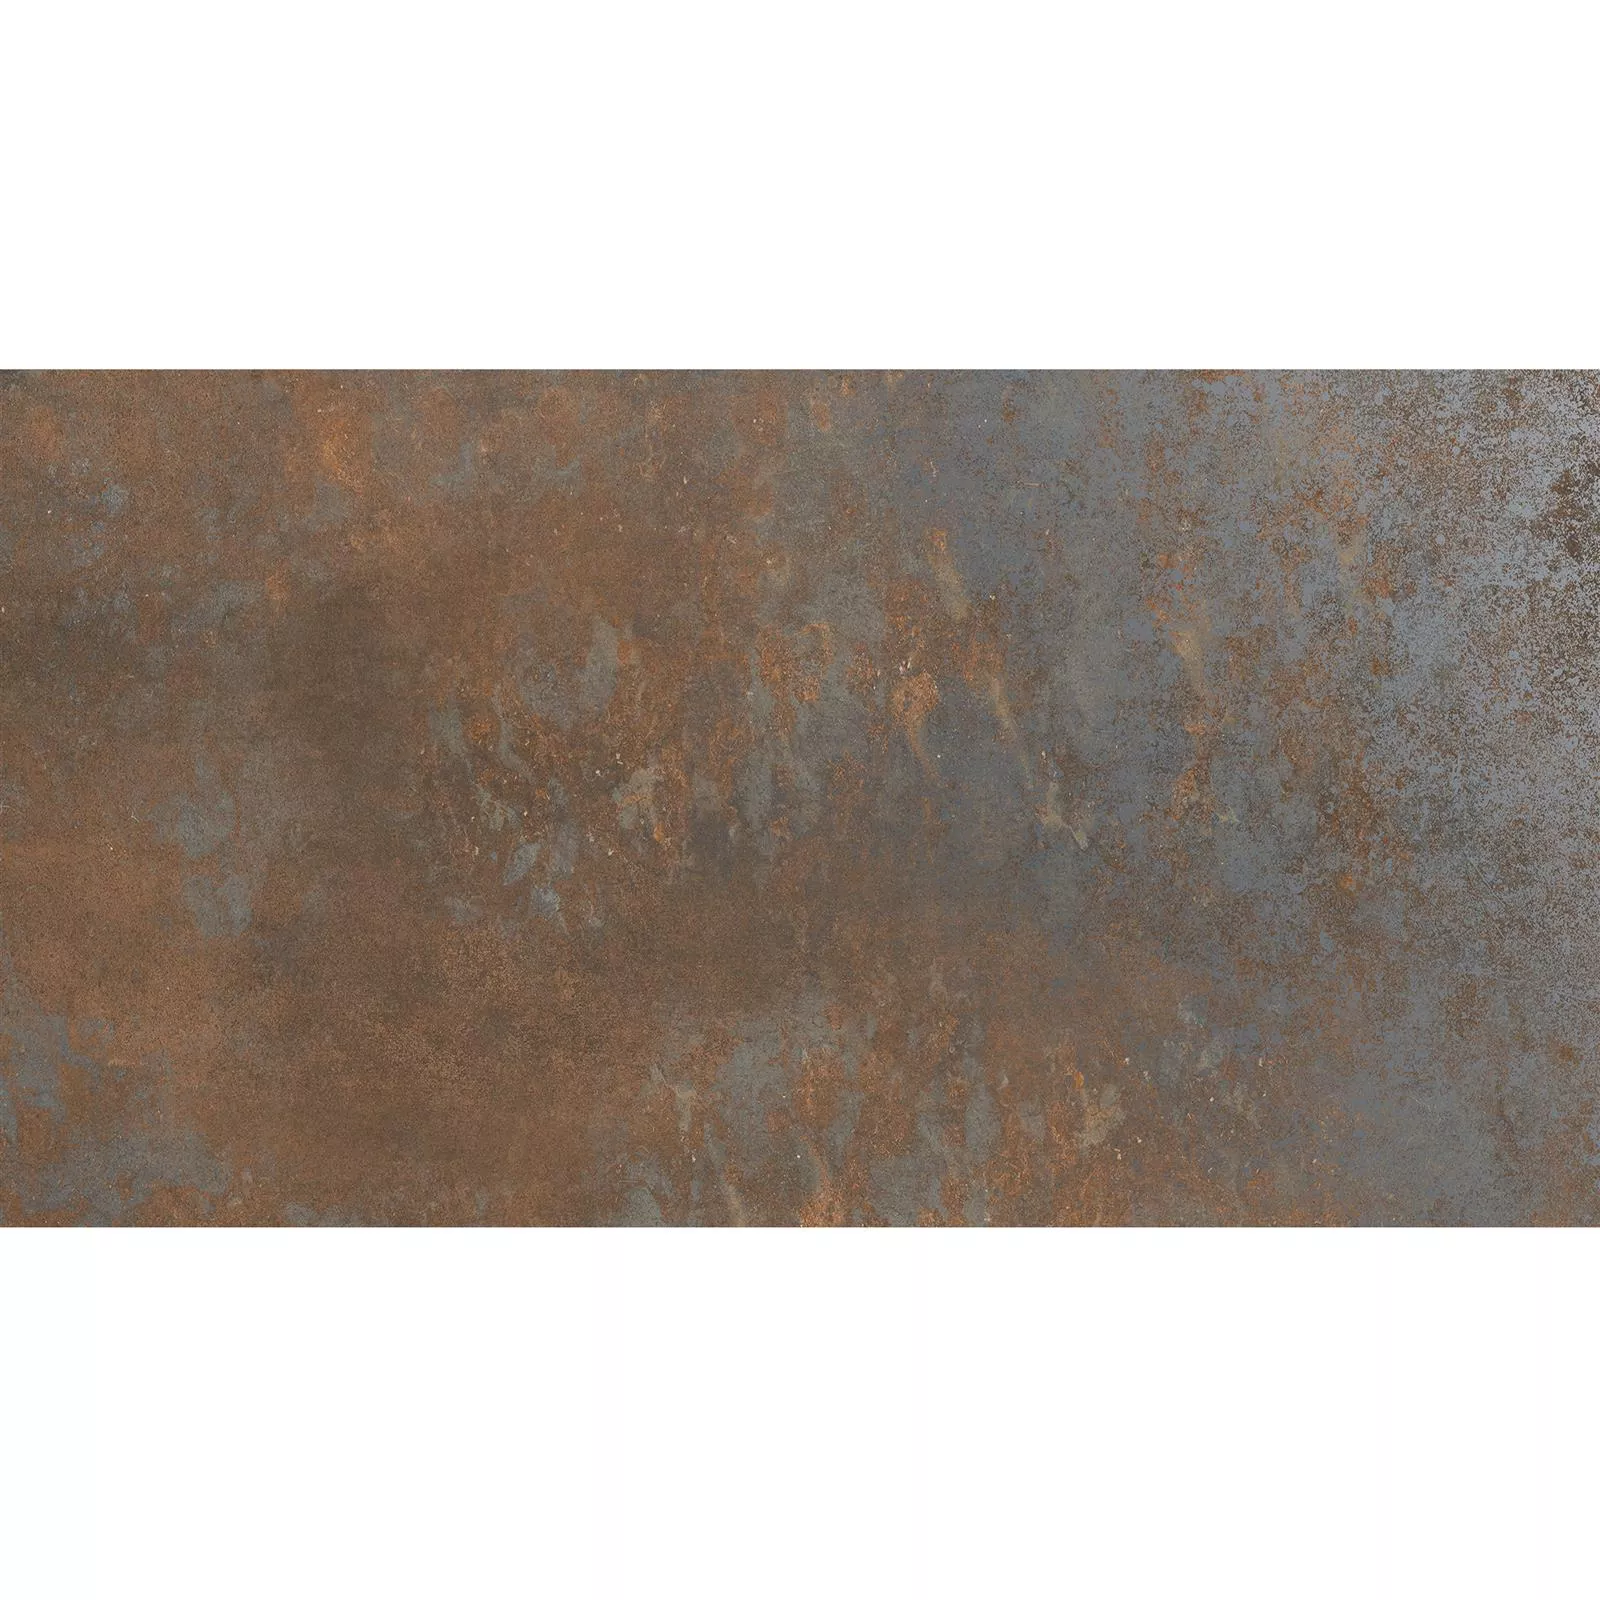 Πλακάκια Δαπέδου Sierra Μεταλλική Εμφάνιση Rust R10/B 30x60cm